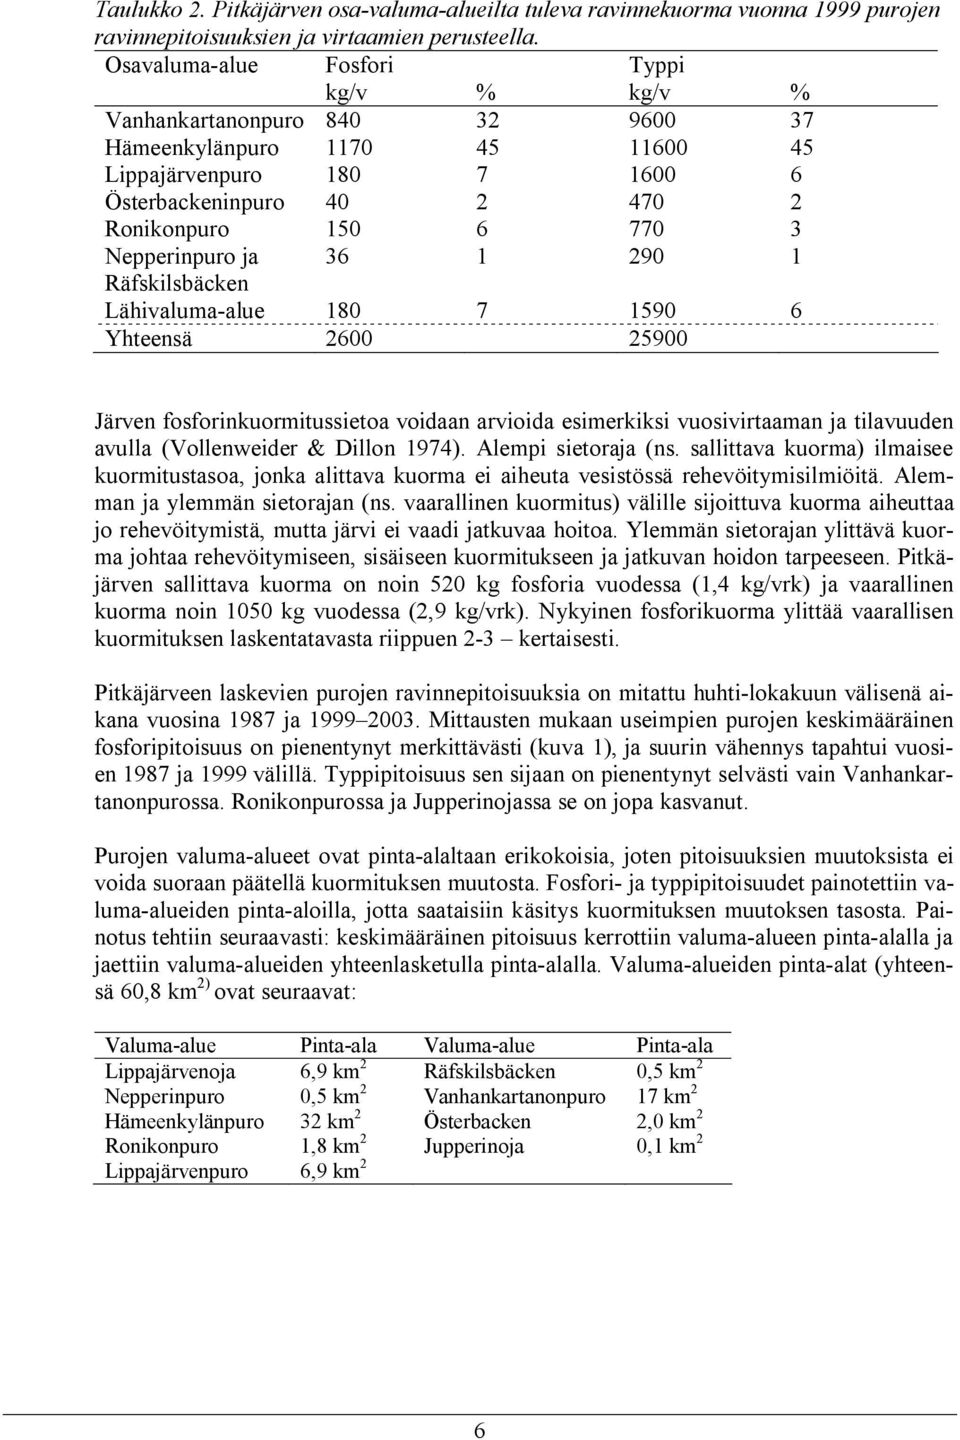 Nepperinpuro ja 36 1 290 1 Räfskilsbäcken Lähivaluma-alue 180 7 1590 6 Yhteensä 2600 25900 Järven fosforinkuormitussietoa voidaan arvioida esimerkiksi vuosivirtaaman ja tilavuuden avulla